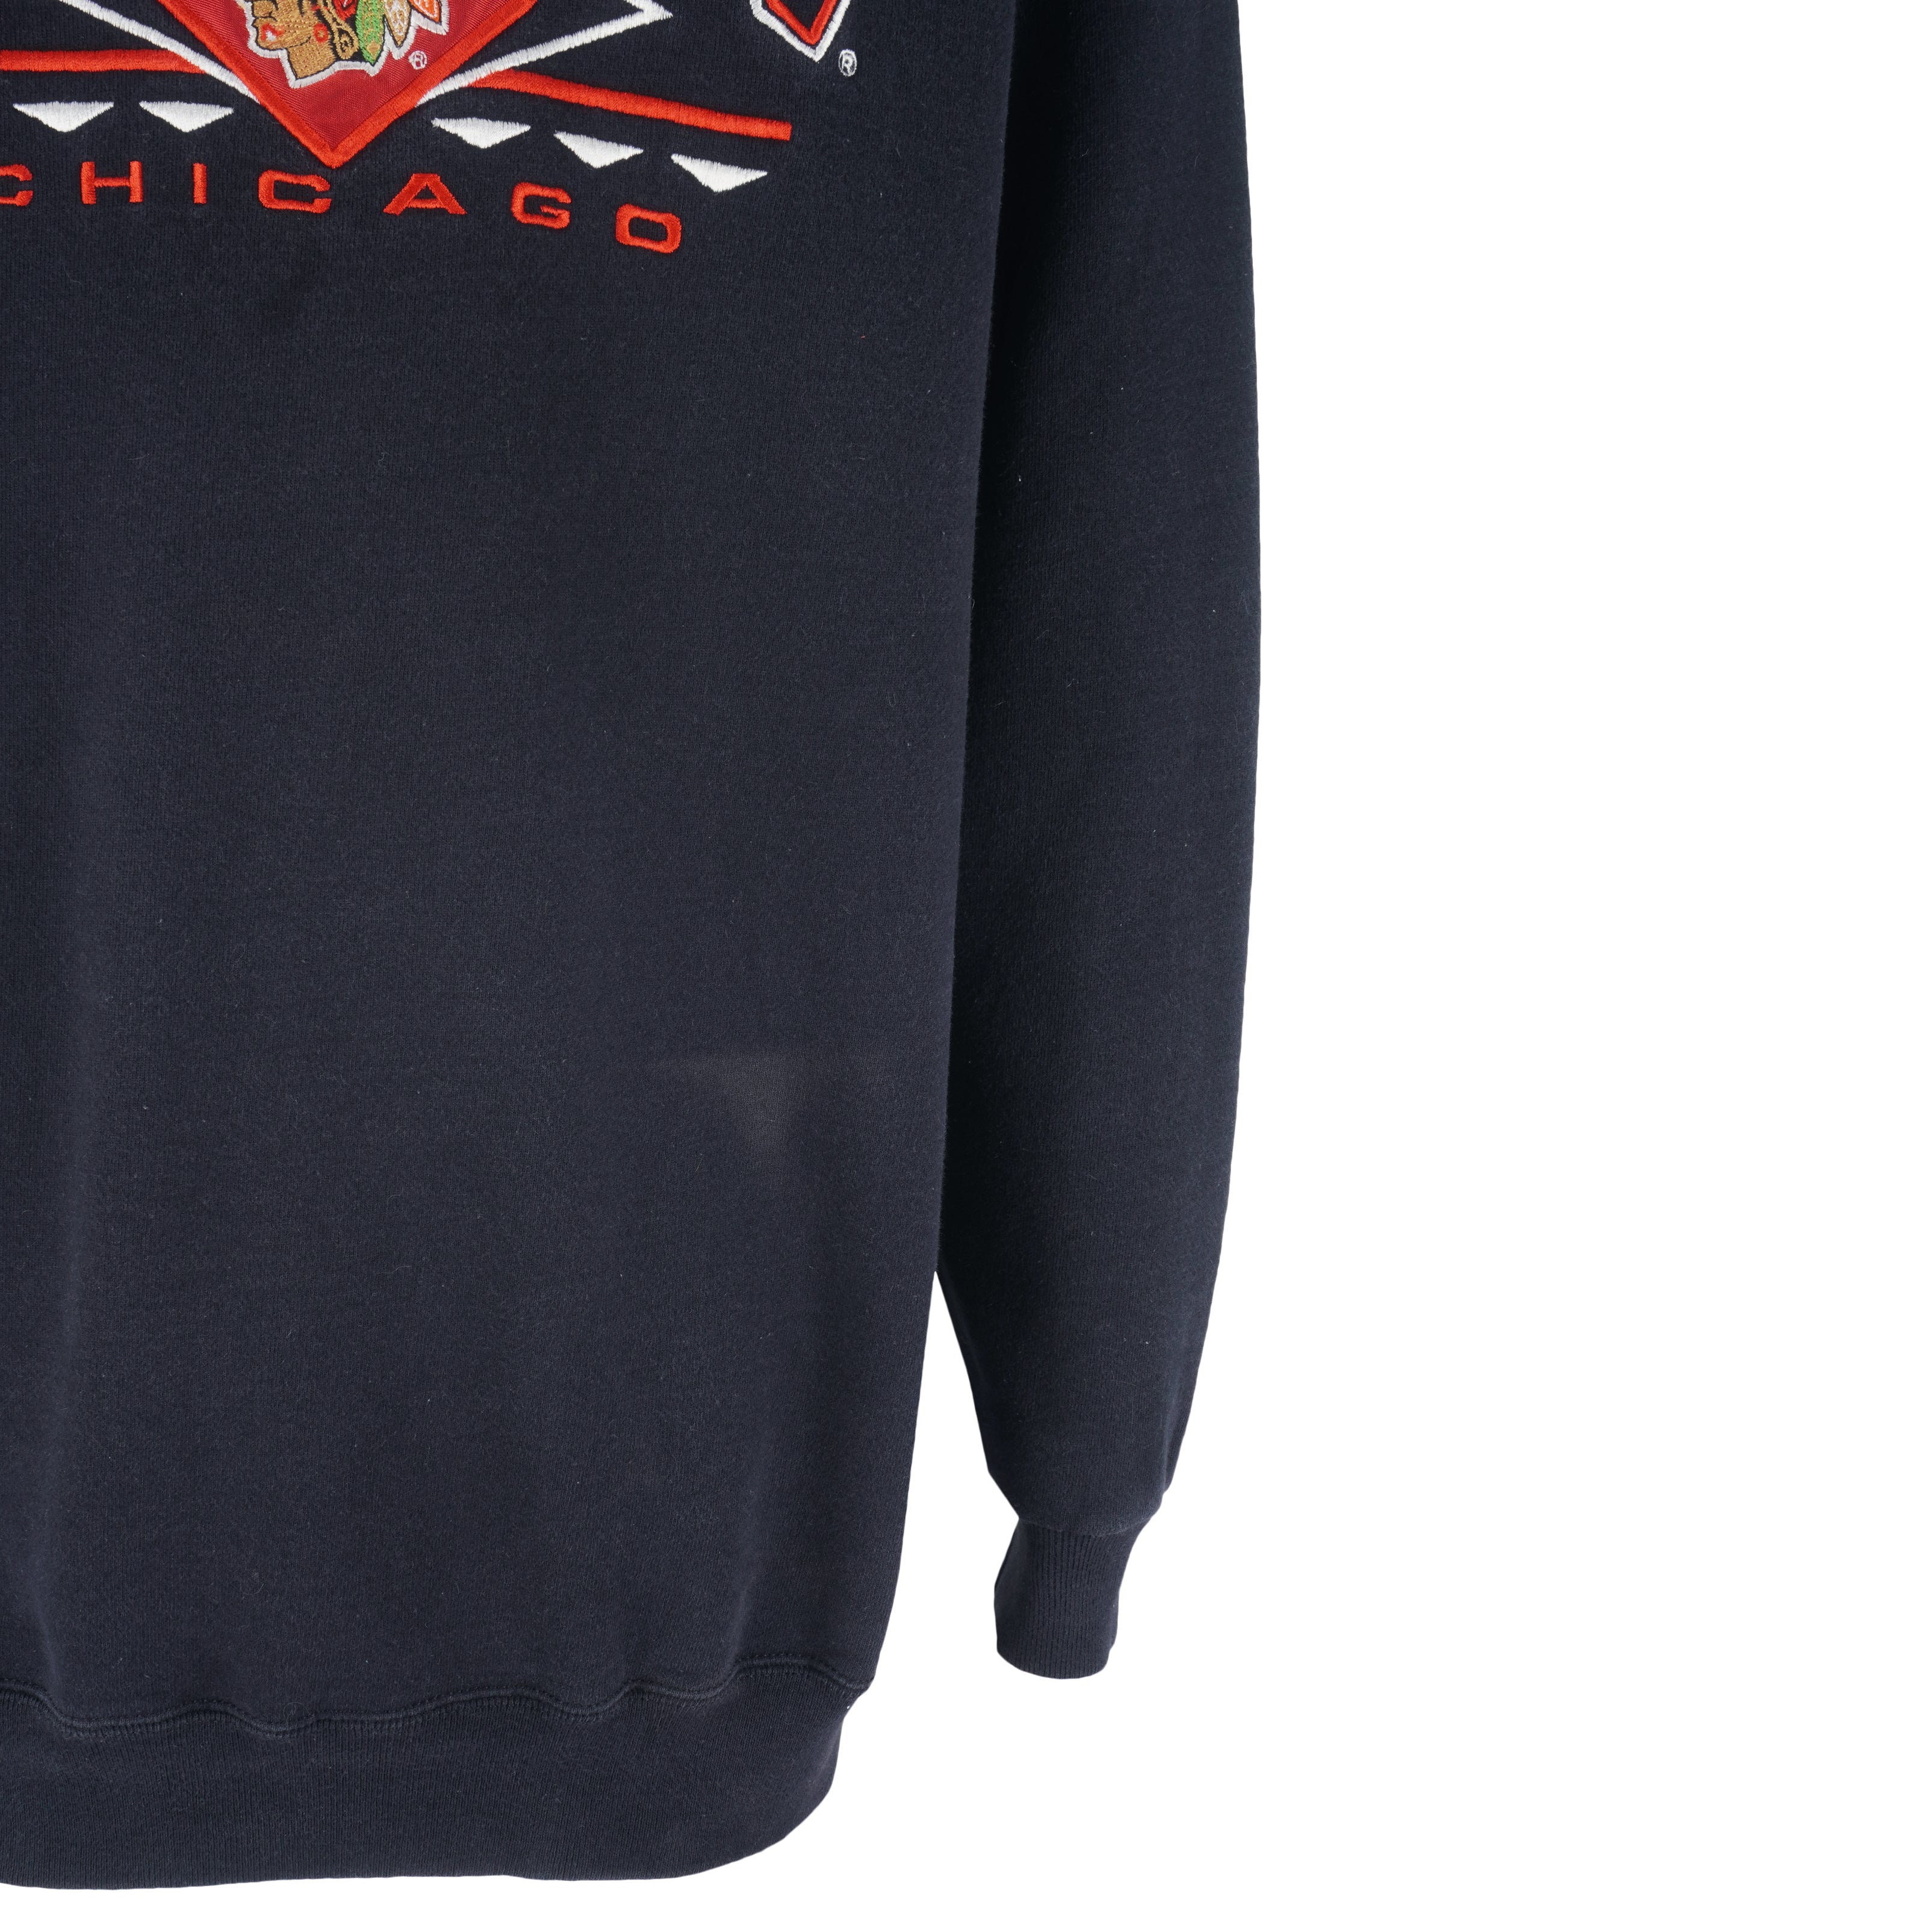 Vintage NHL (Logo Athletics) - Chicago Blackhawks Embroidered Sweatshirt 1990s X-Large